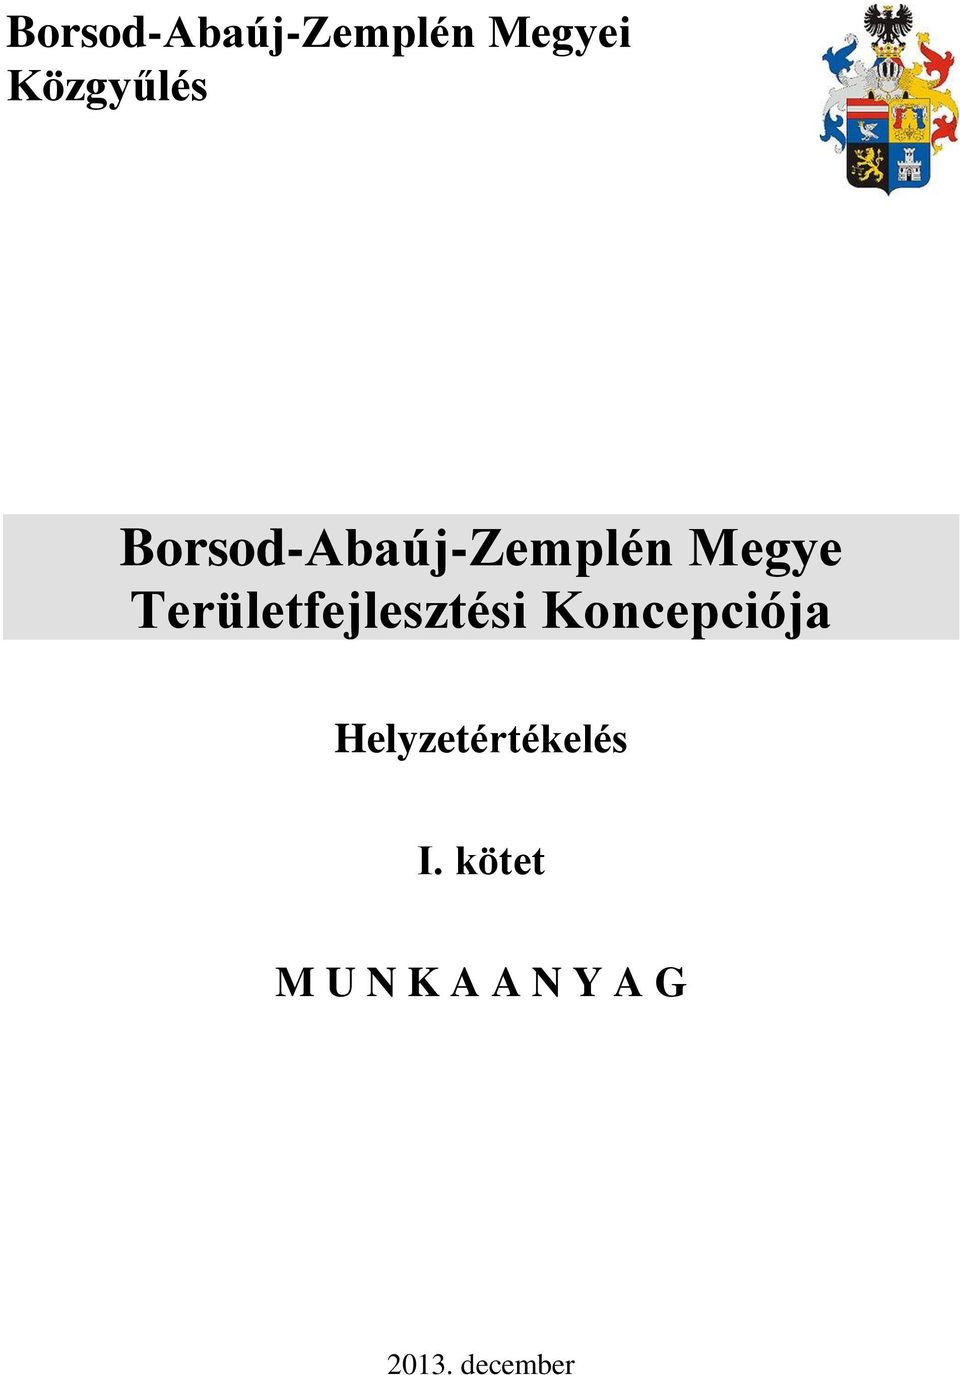 Borsod-Abaúj-Zemplén Megye Területfejlesztési Koncepciója - PDF Ingyenes  letöltés